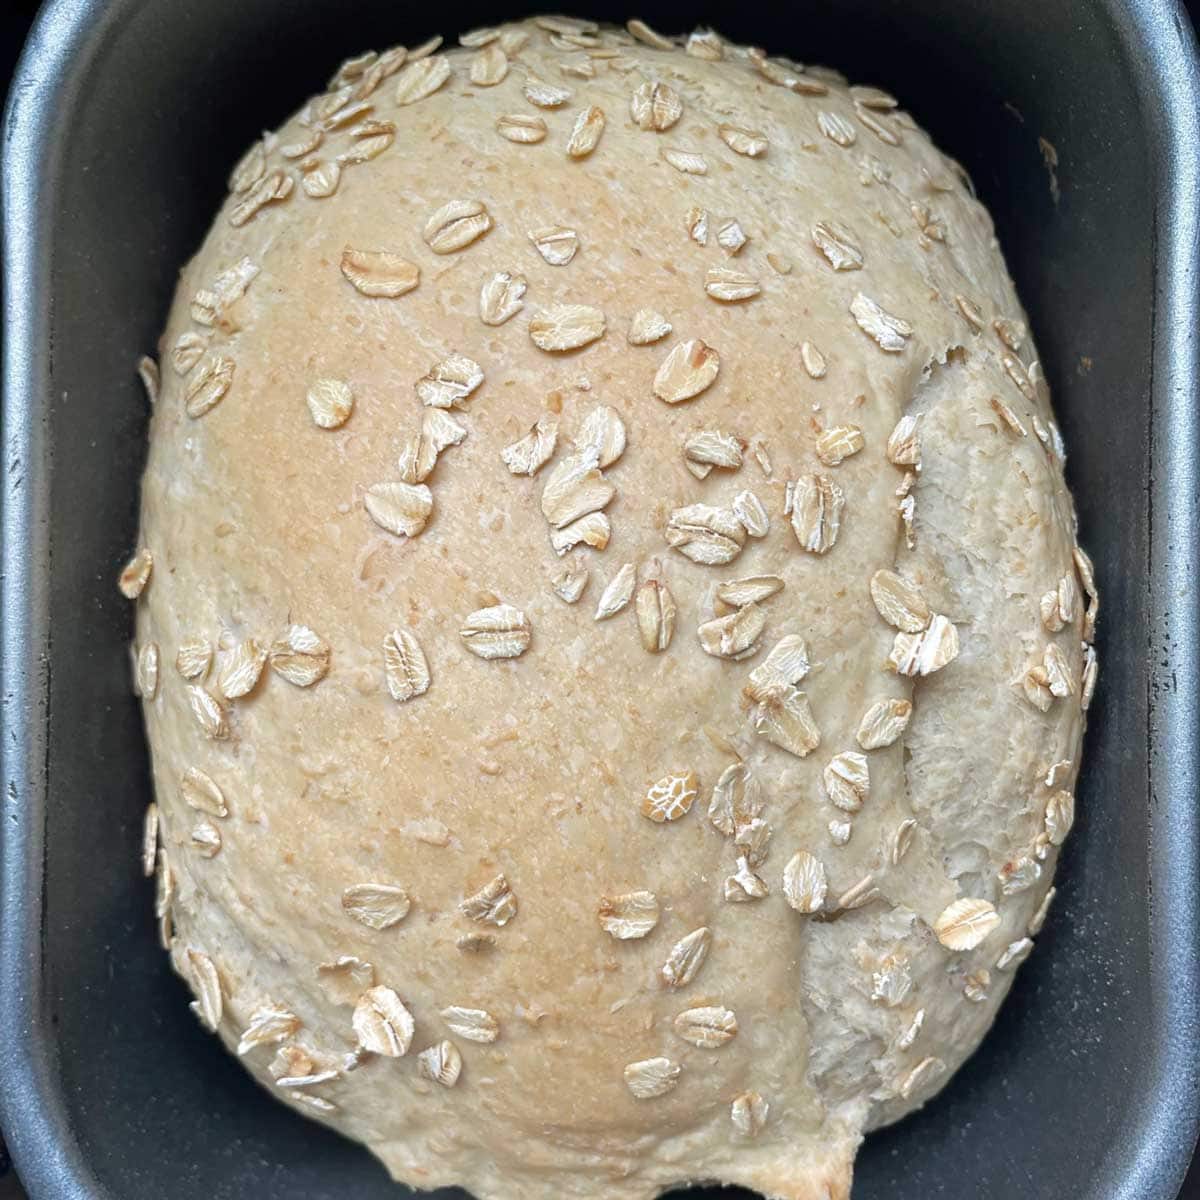 Oatmeal bread in bread machine pan.